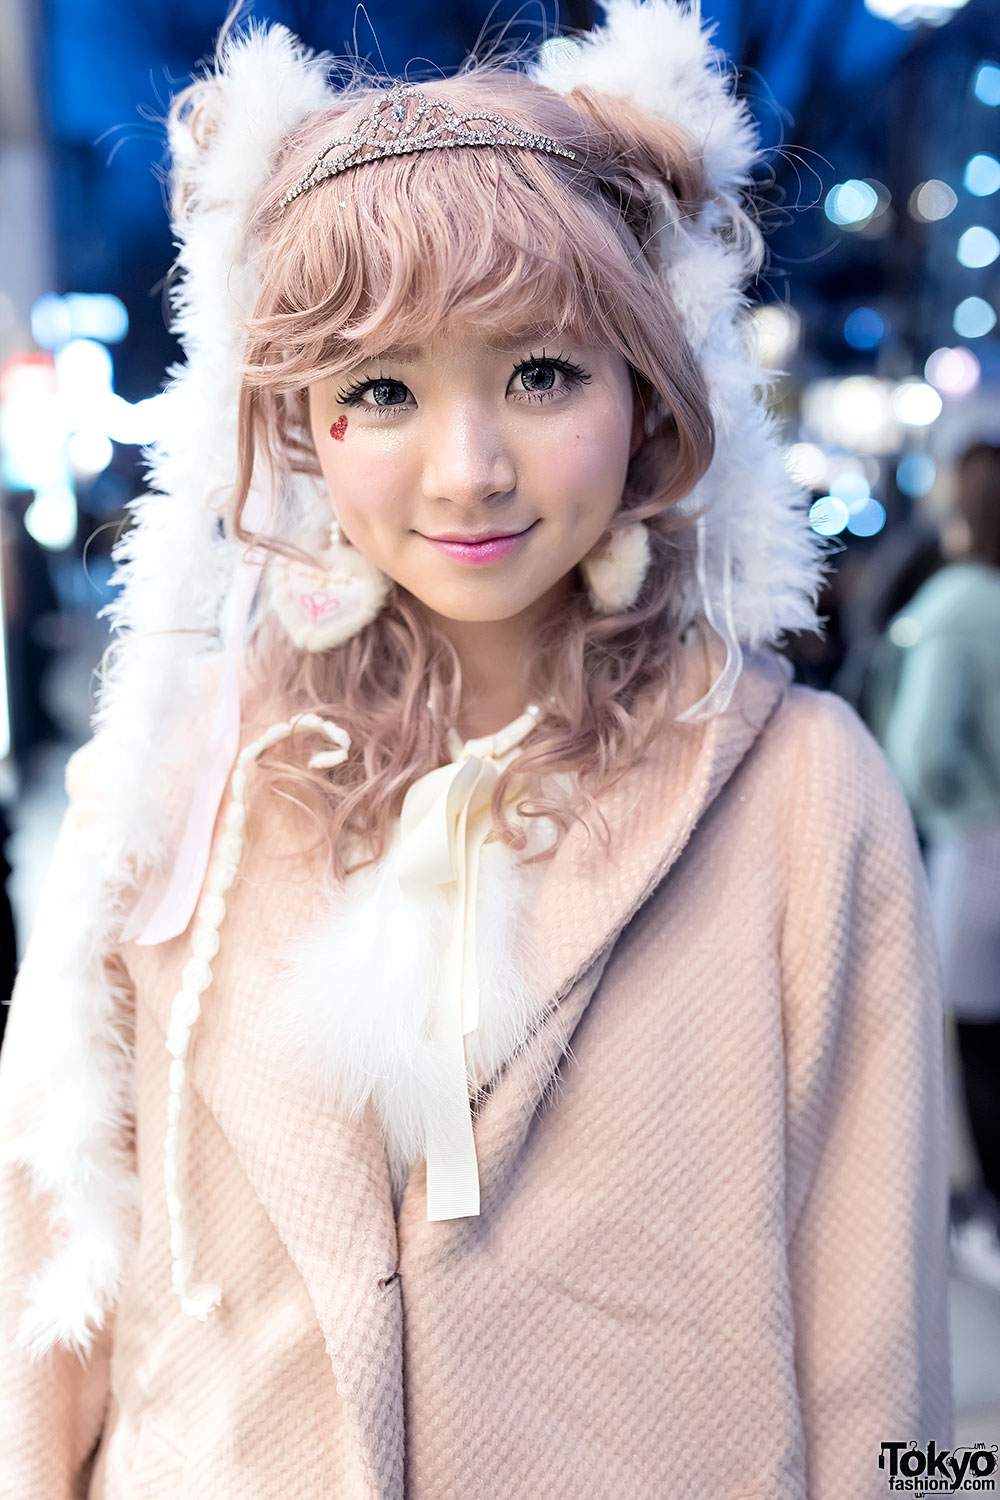 Swankiss Dress, Pastel Hair, Tiara & Swankiss Platforms in Harajuku